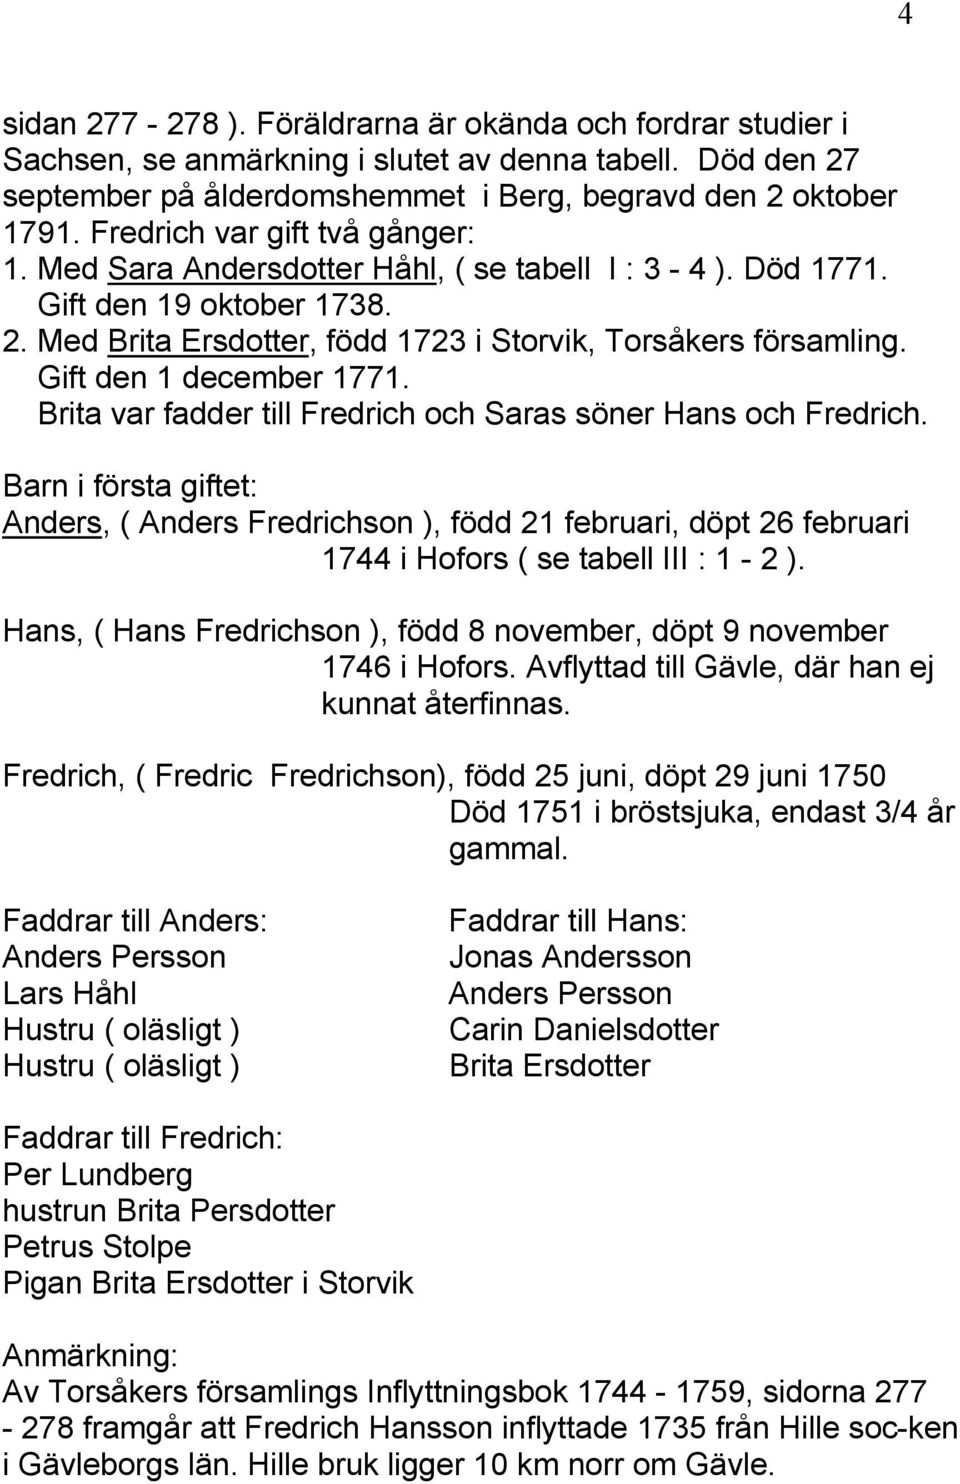 Gift den 1 december 1771. Brita var fadder till Fredrich och Saras söner Hans och Fredrich.